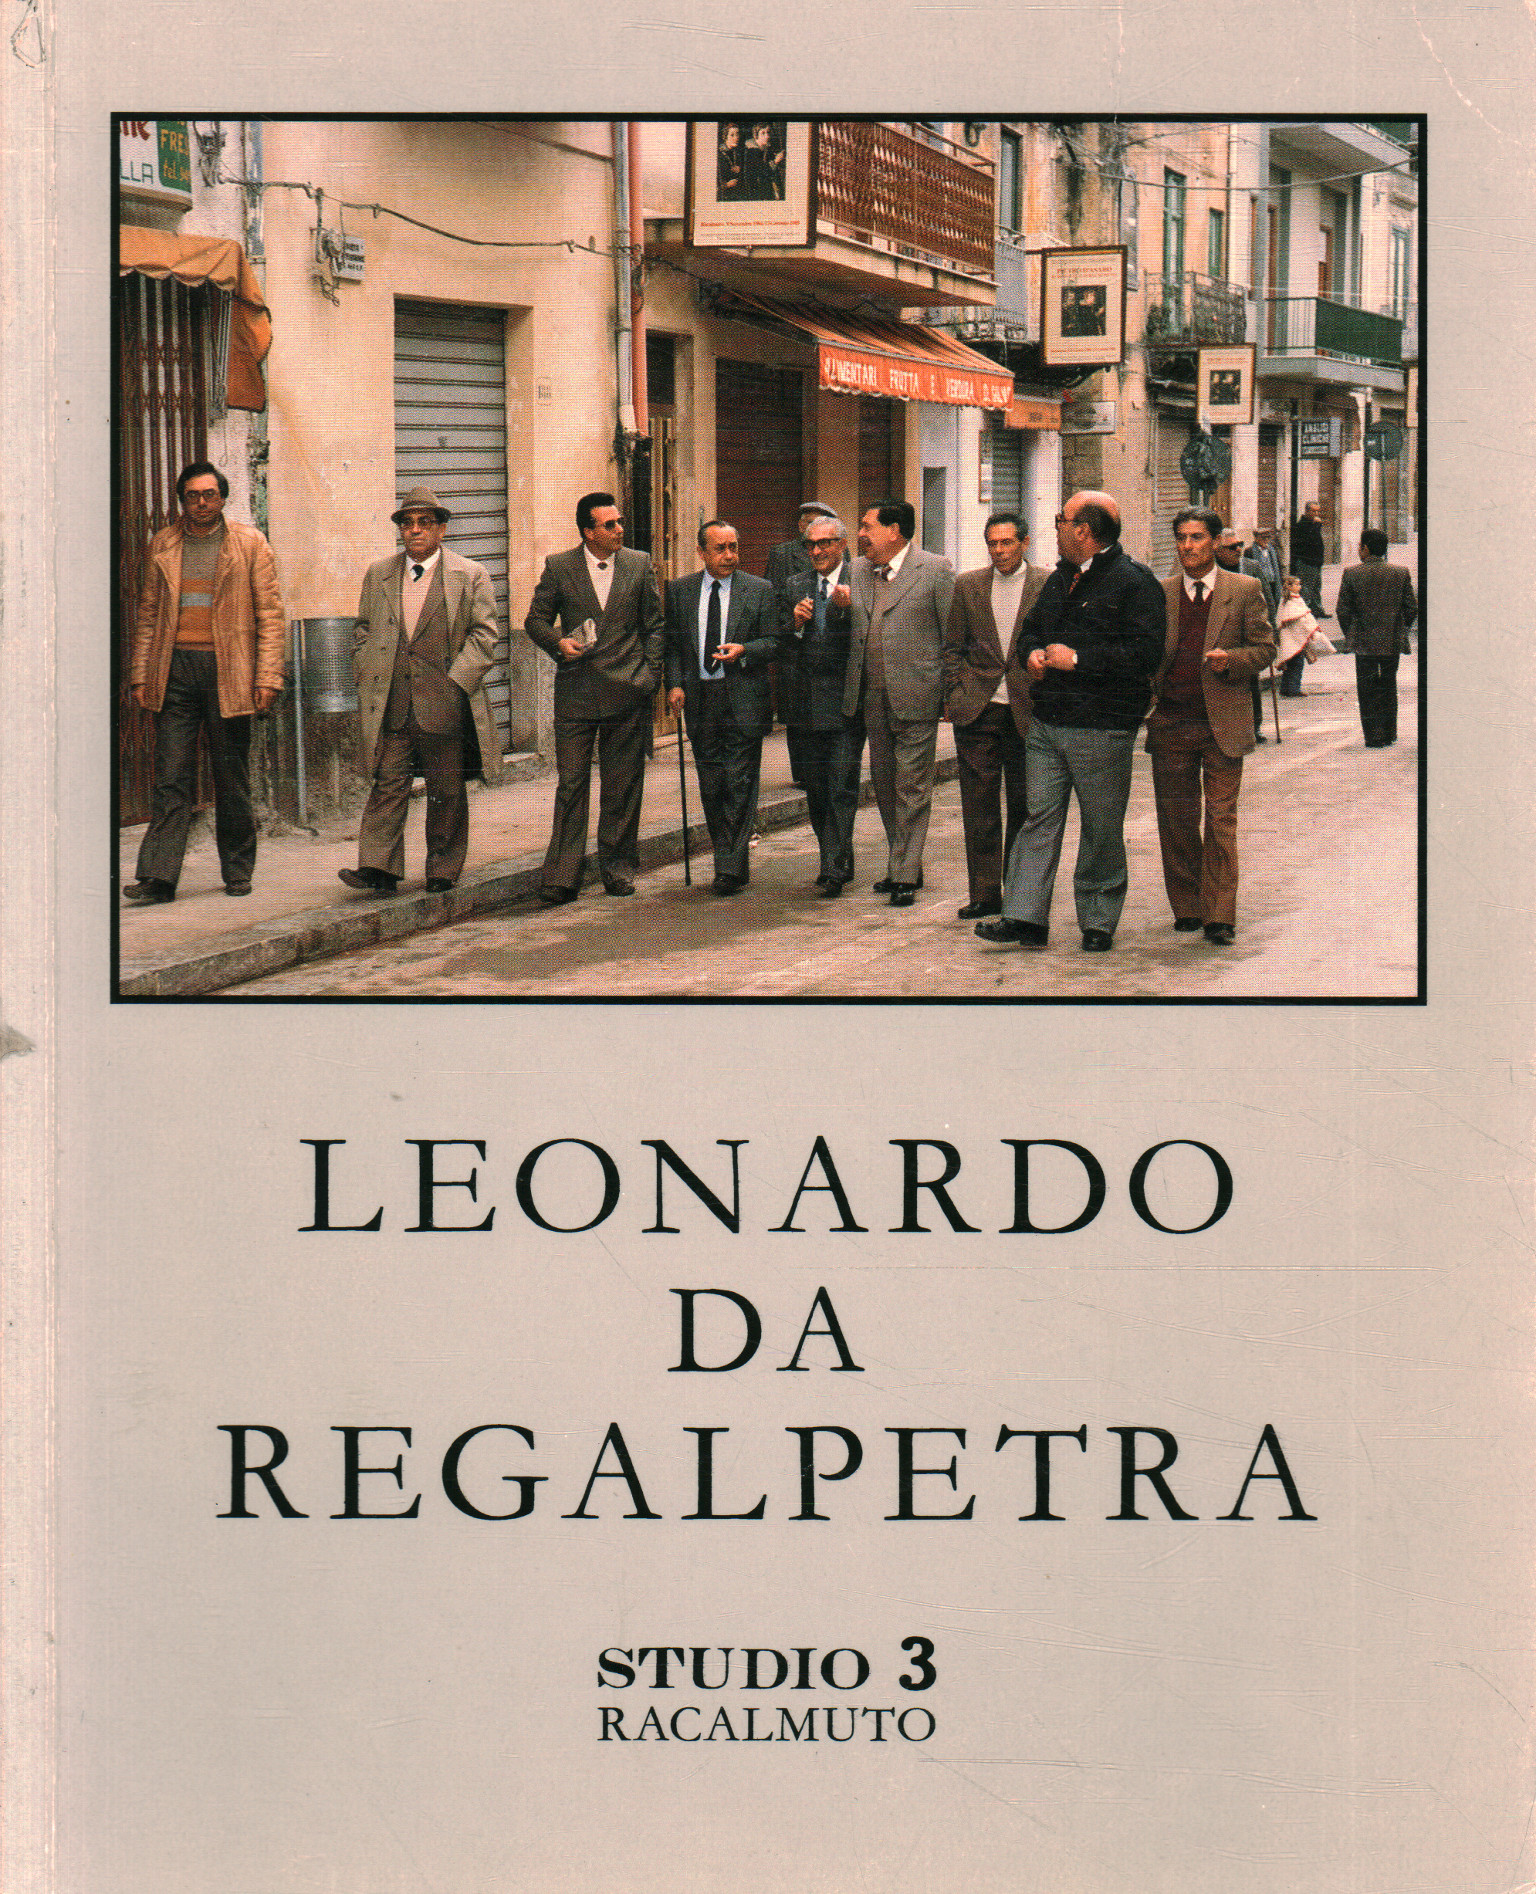 Leonardo da Regalpetra. An album of re